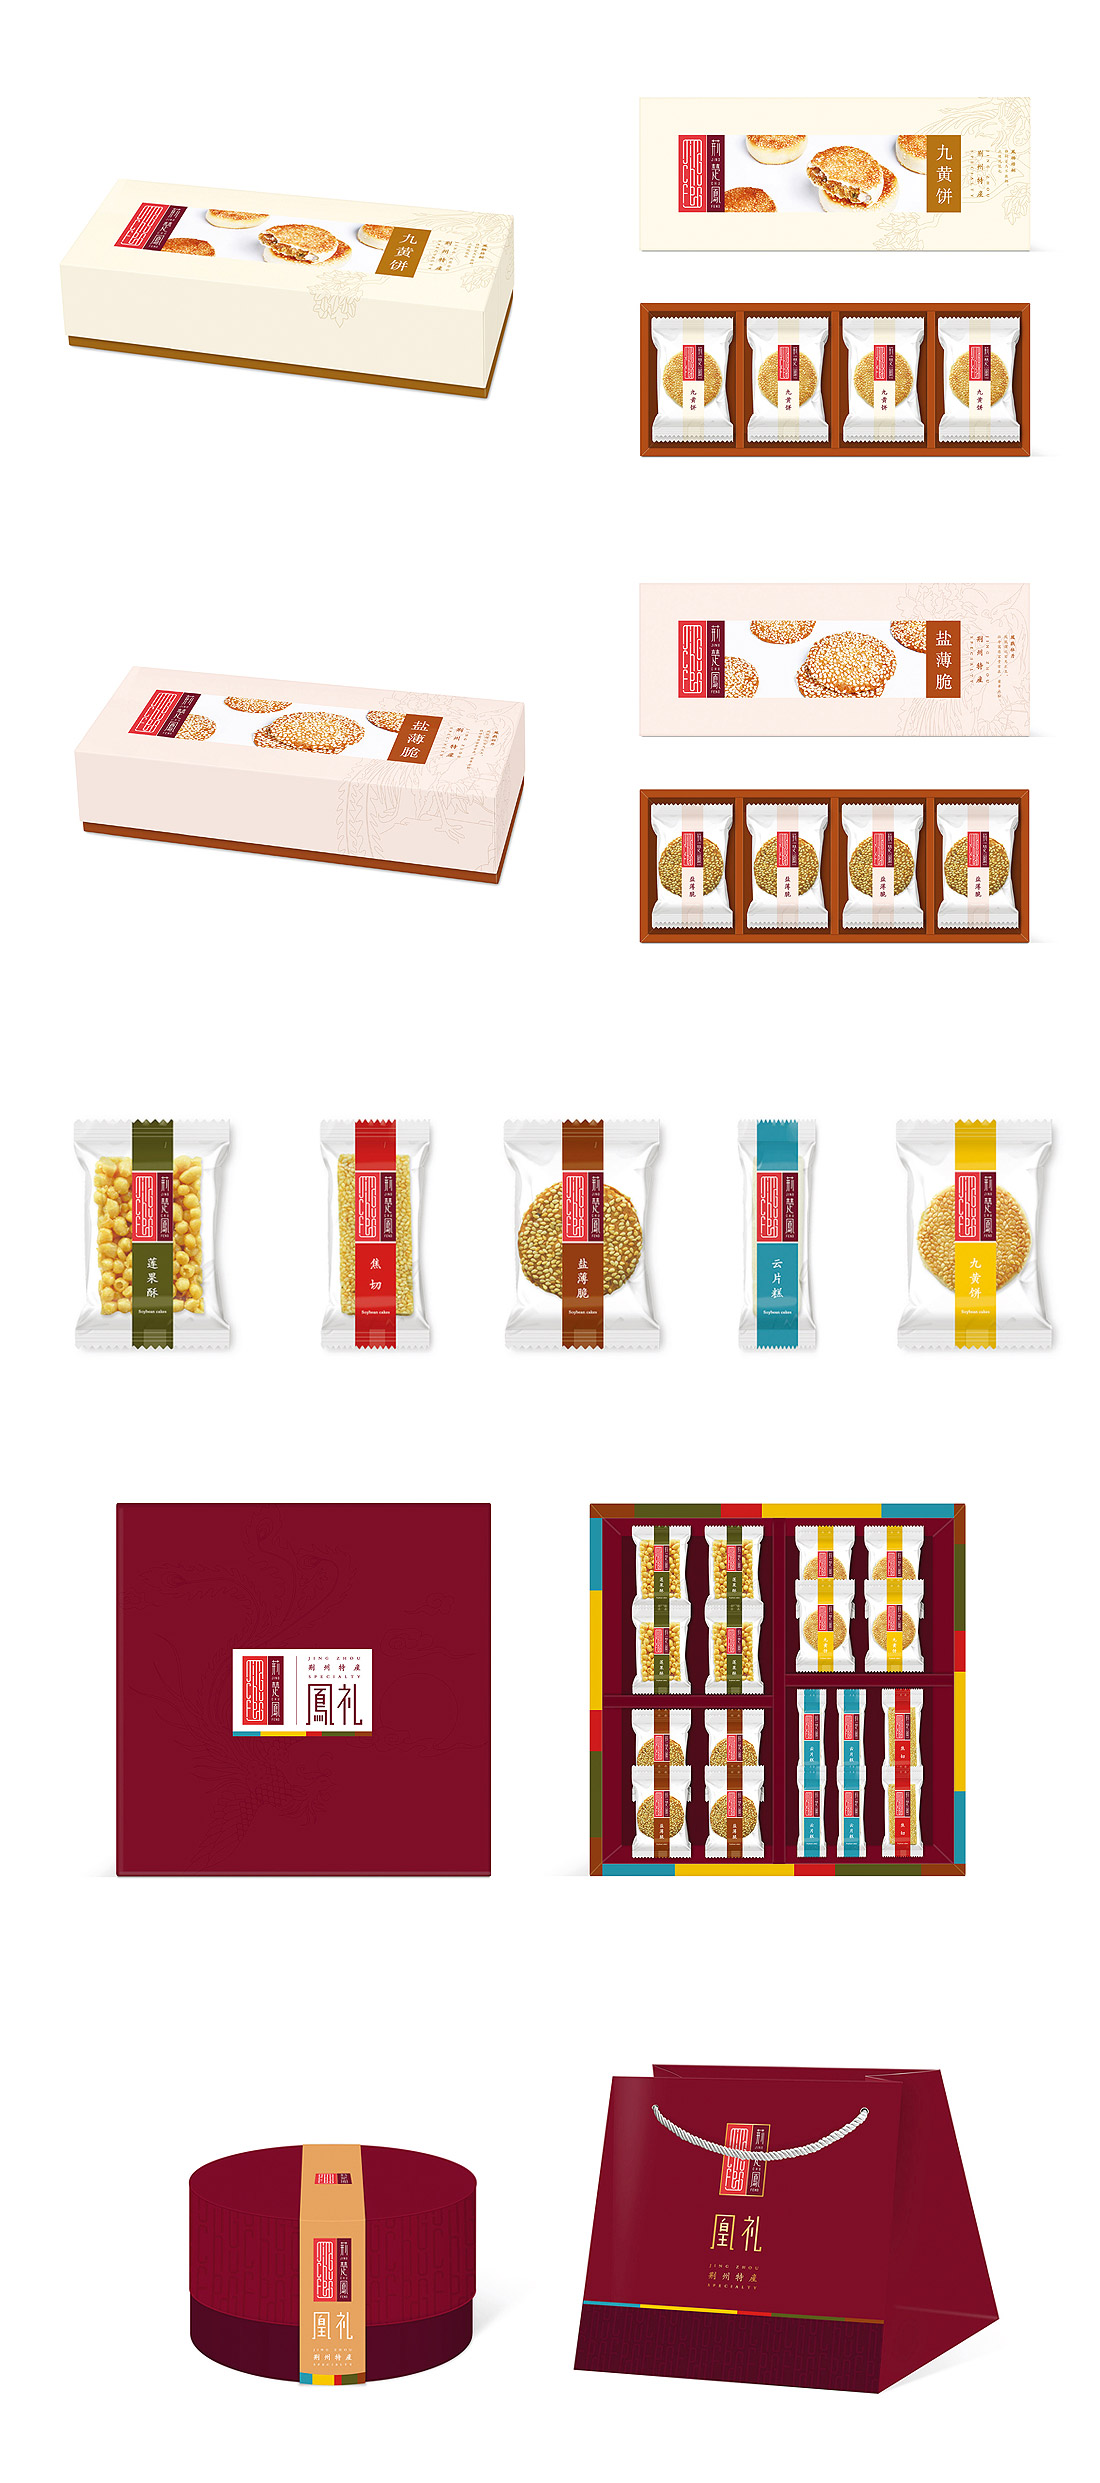 香特莉食品包装设计欣赏，来源自黄蜂网https://woofeng.cn/